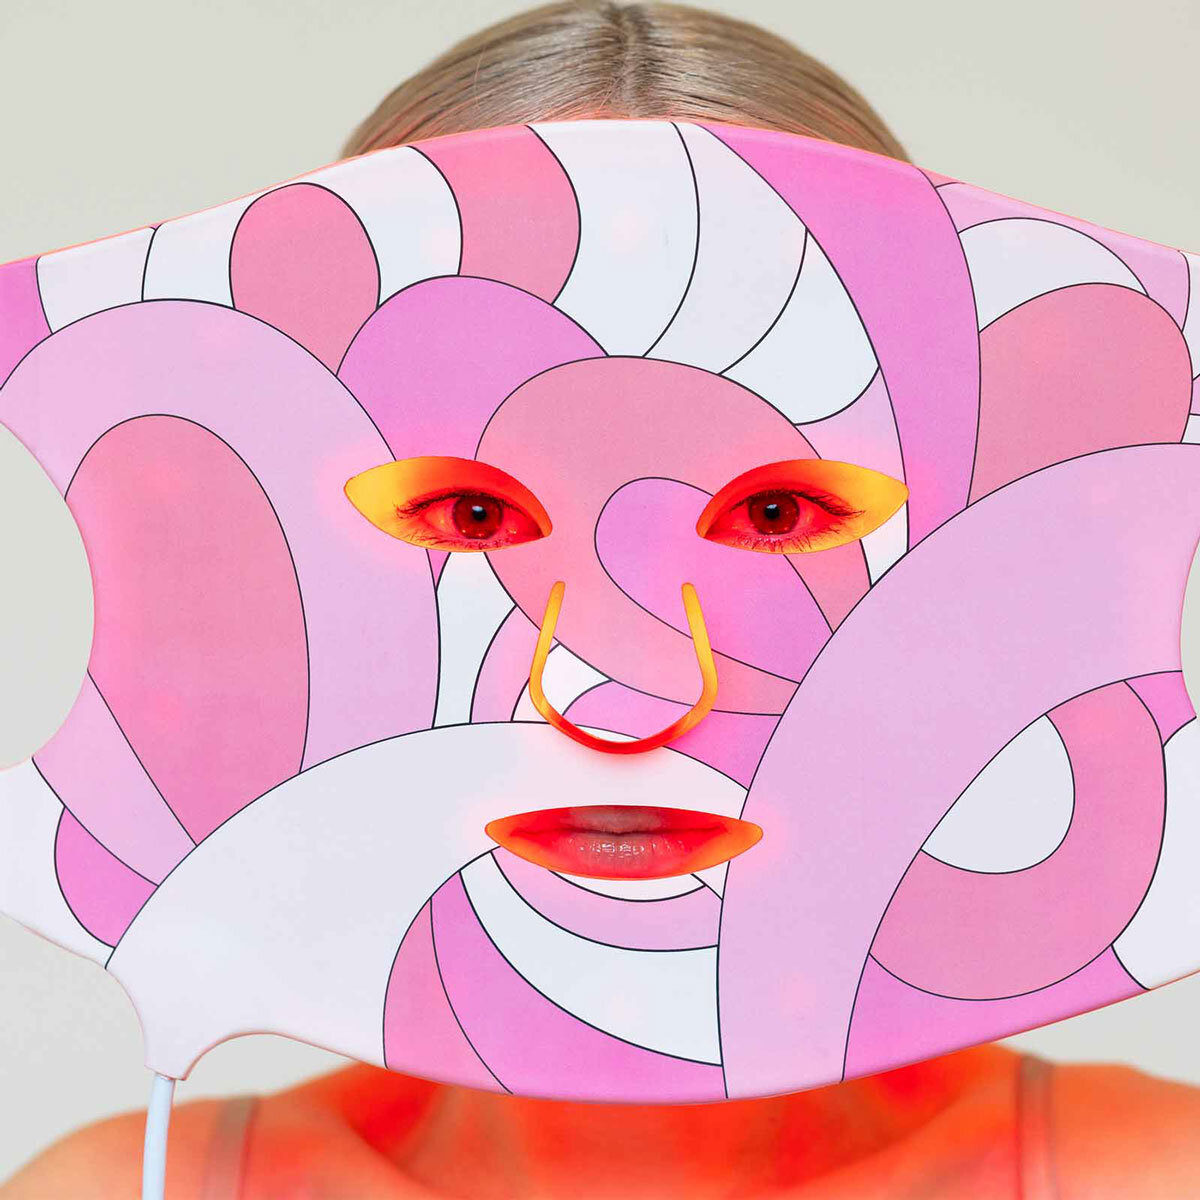 Image of Zutta LED Mask on woman